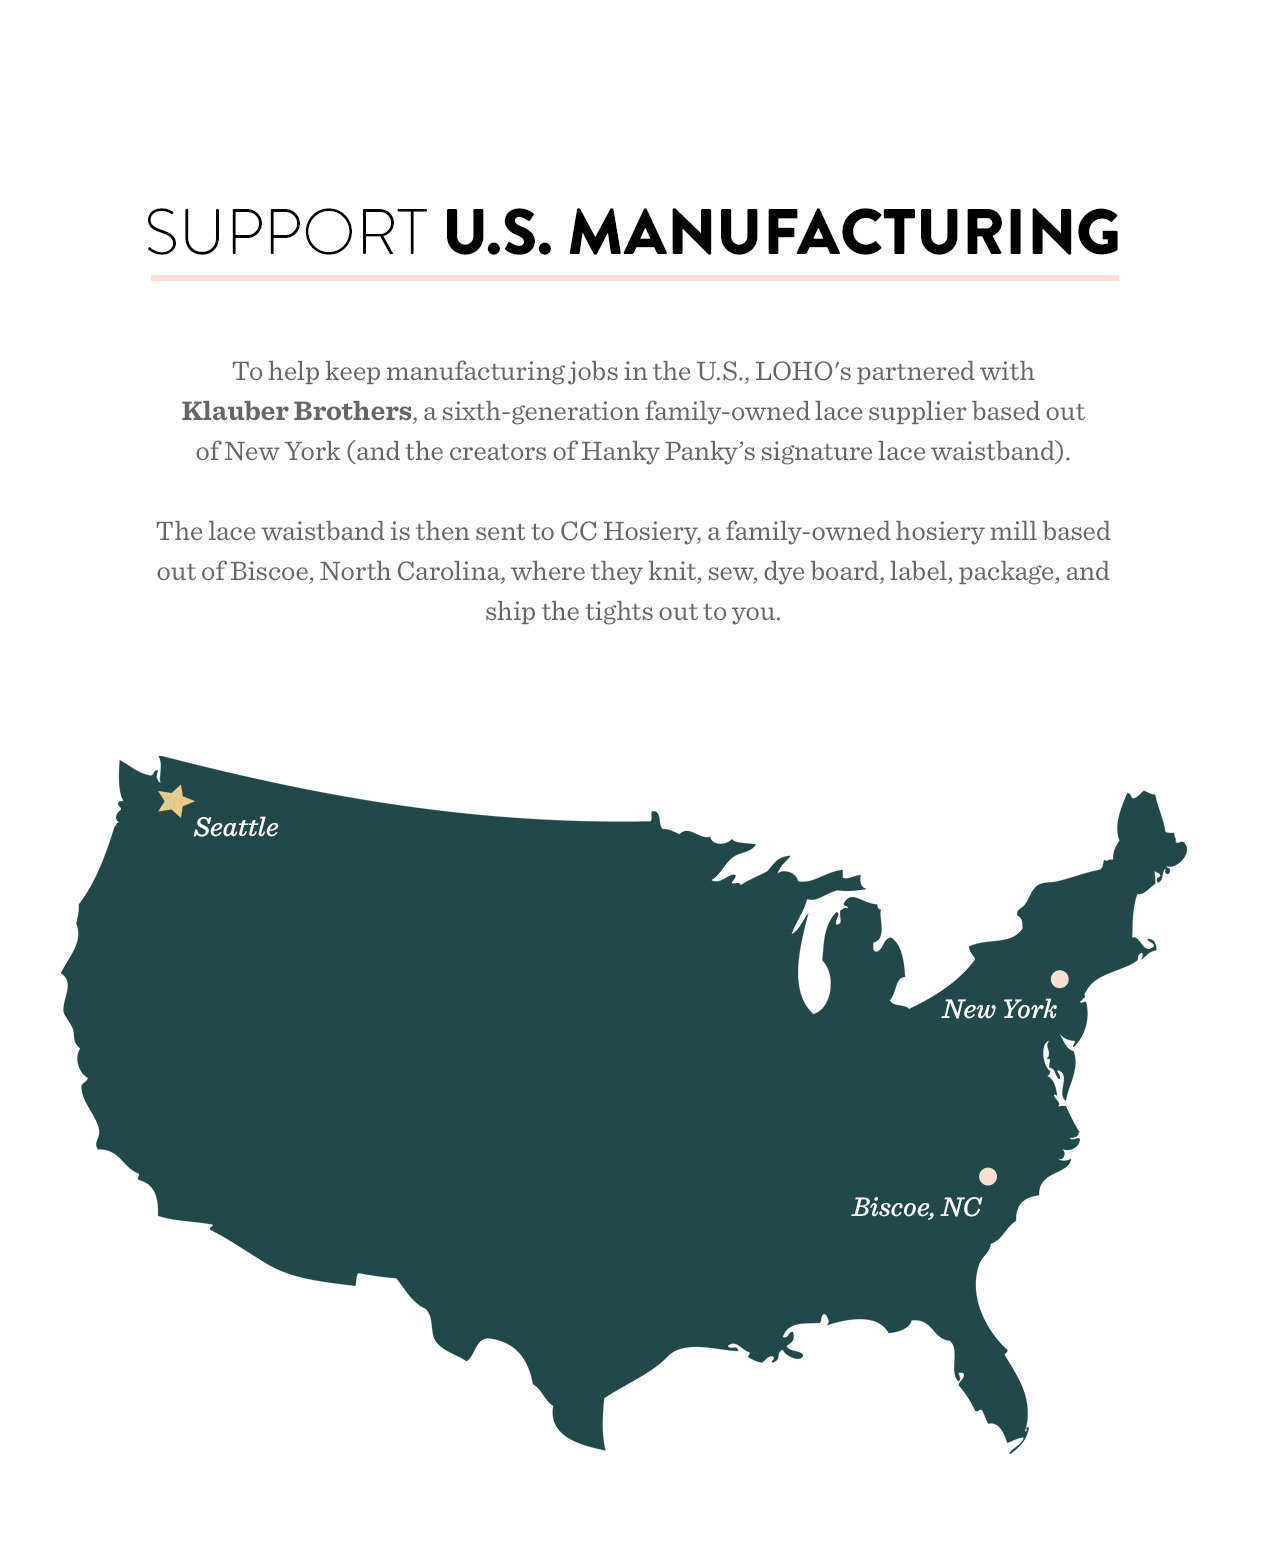 Support U.S. Manufacturing